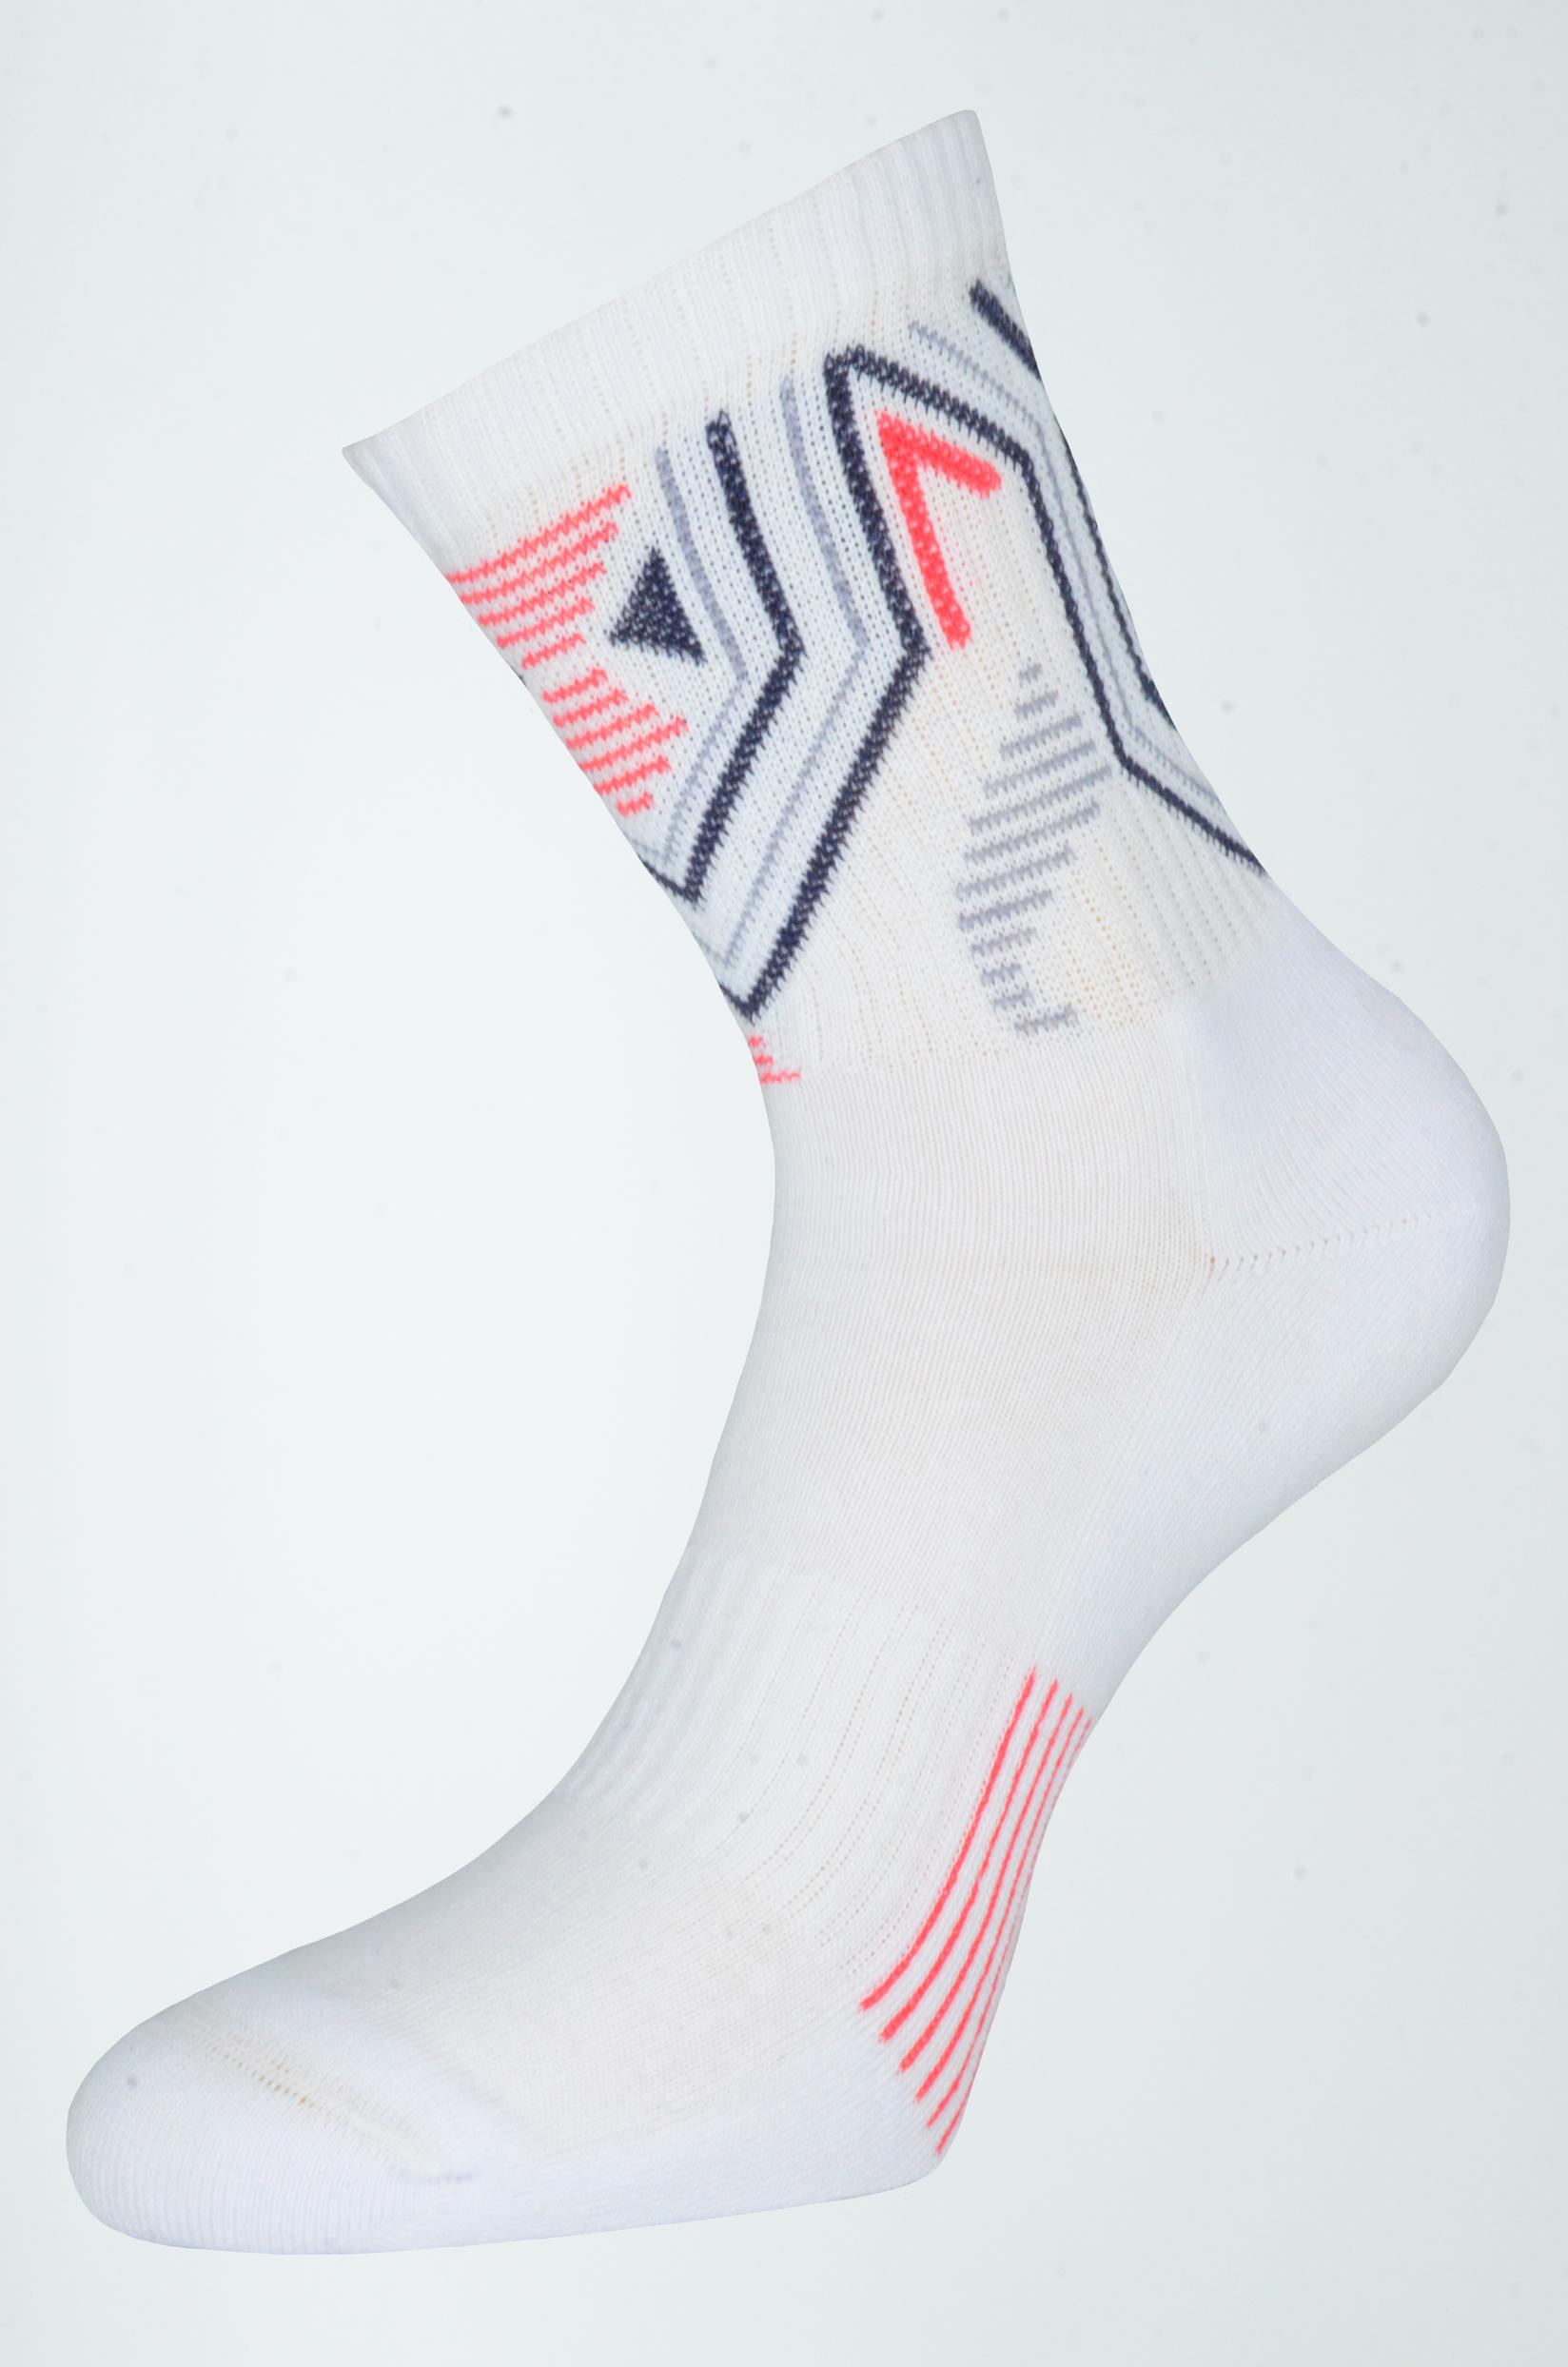 Selected image for GERBI Sportske čarape Sport Style  39-41 m7 bele